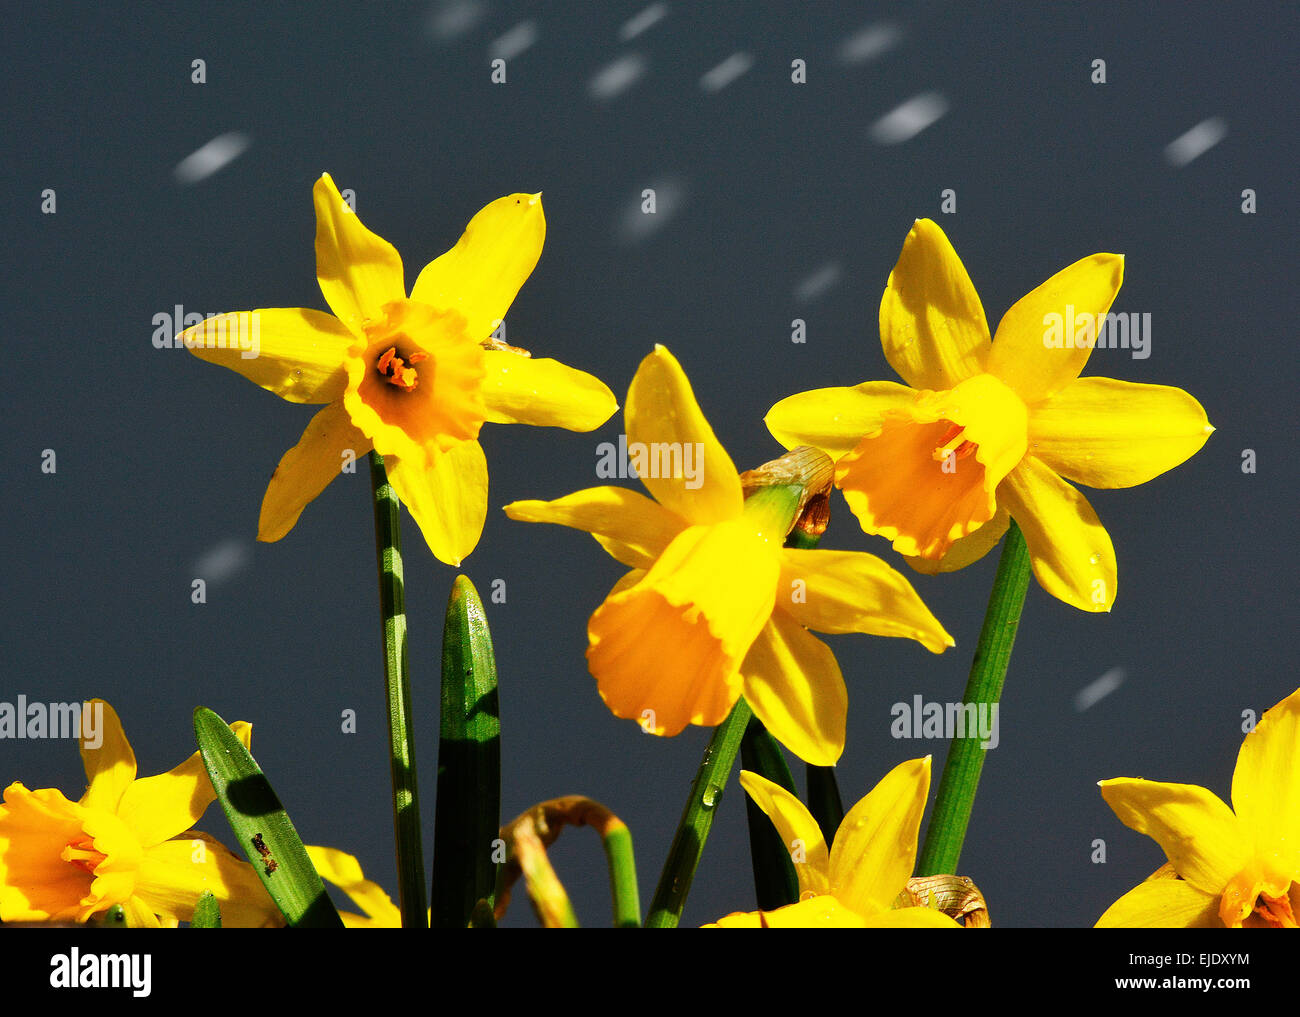 Grauer Himmel und helle Sonne-Narcissus Februar Gold... im März Hagel, Rothwell, Northamptonshire, 24. März 2015. Foto von John Robertson. Stockfoto